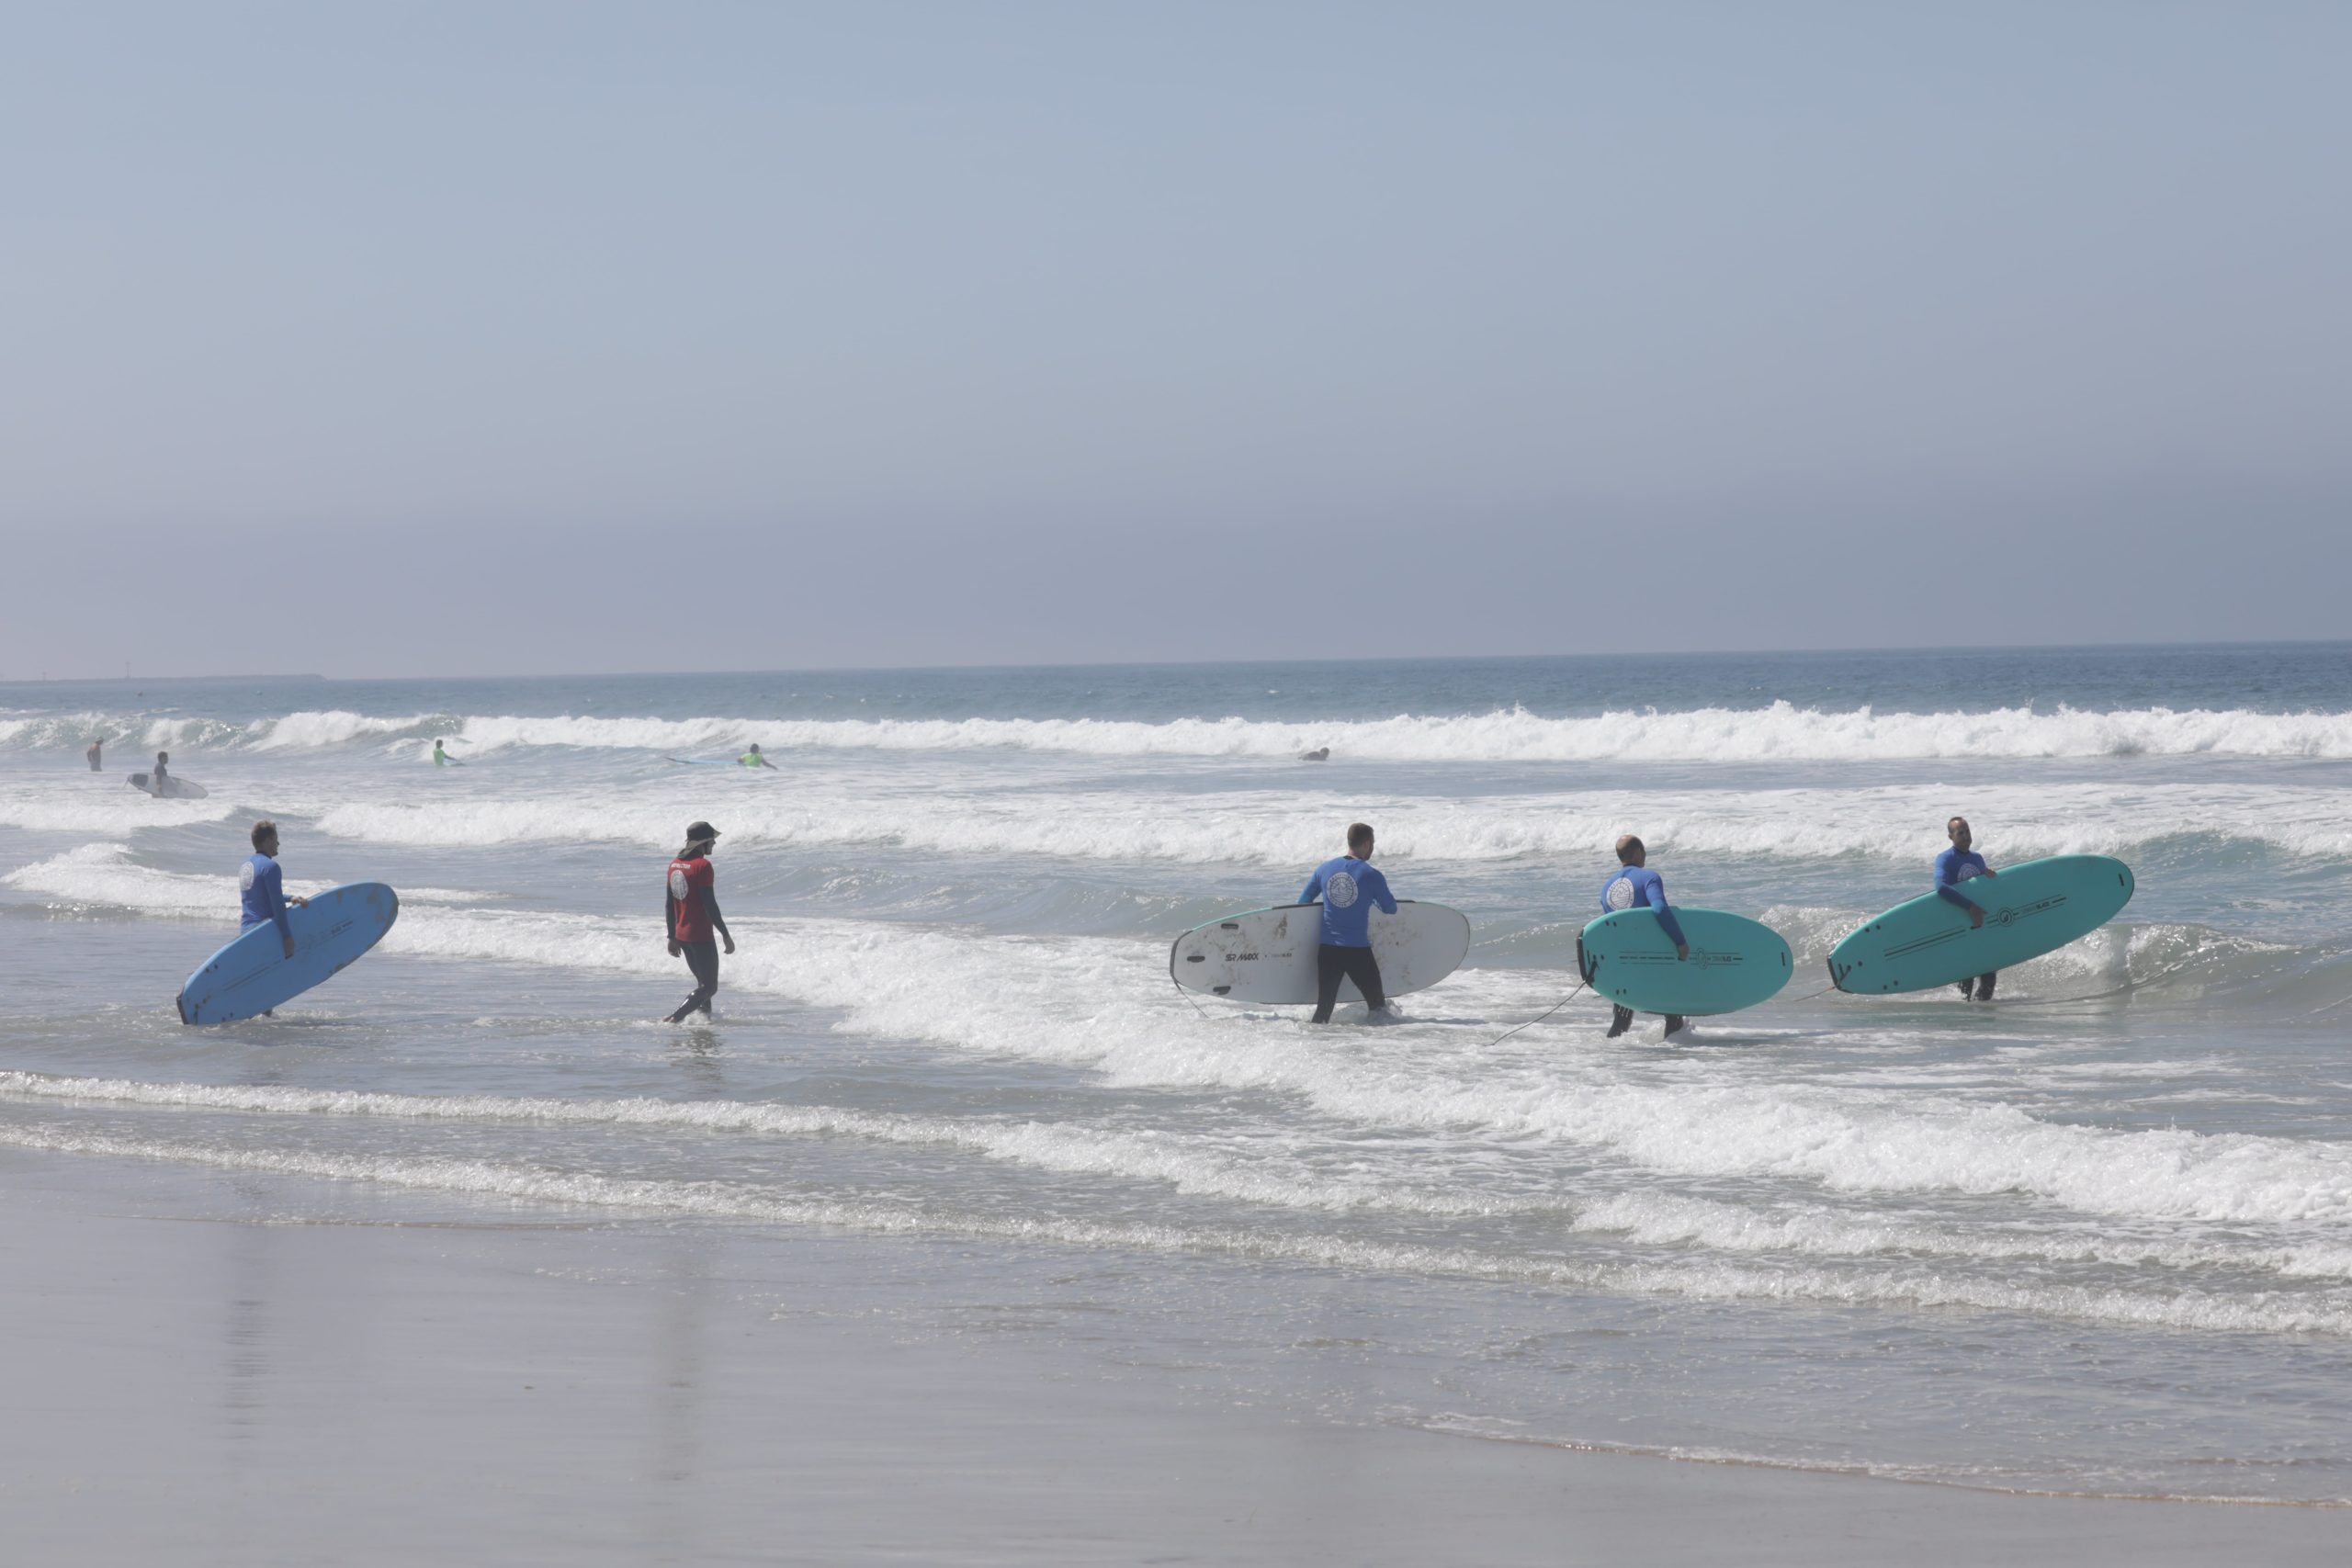 SpinupWP team surfing in the ocean